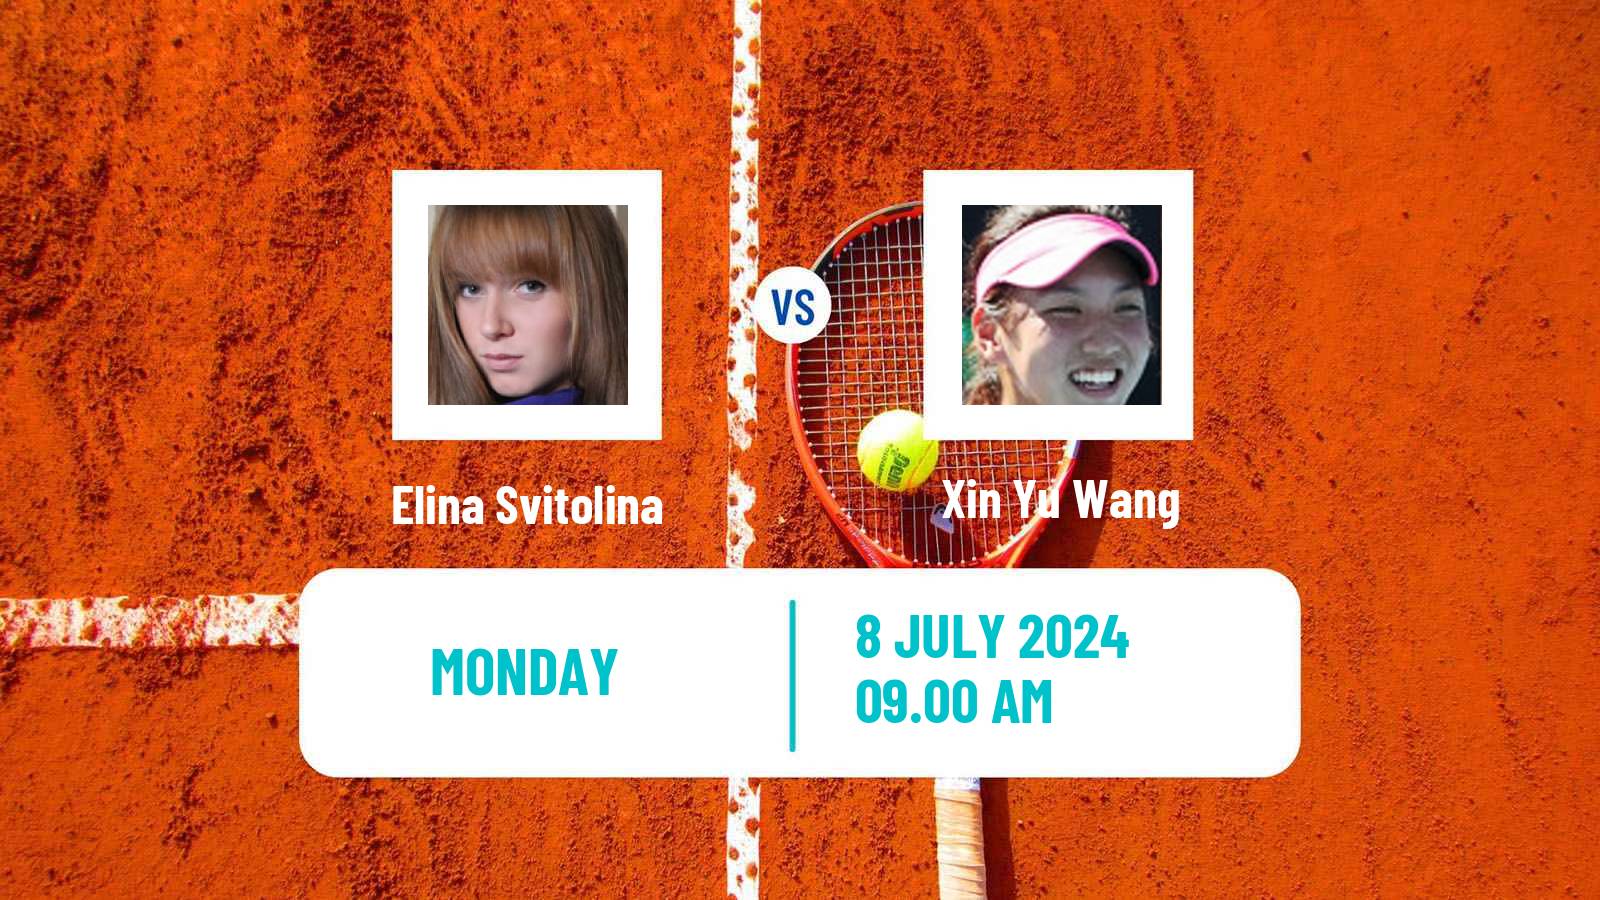 Tennis WTA Wimbledon Elina Svitolina - Xin Yu Wang